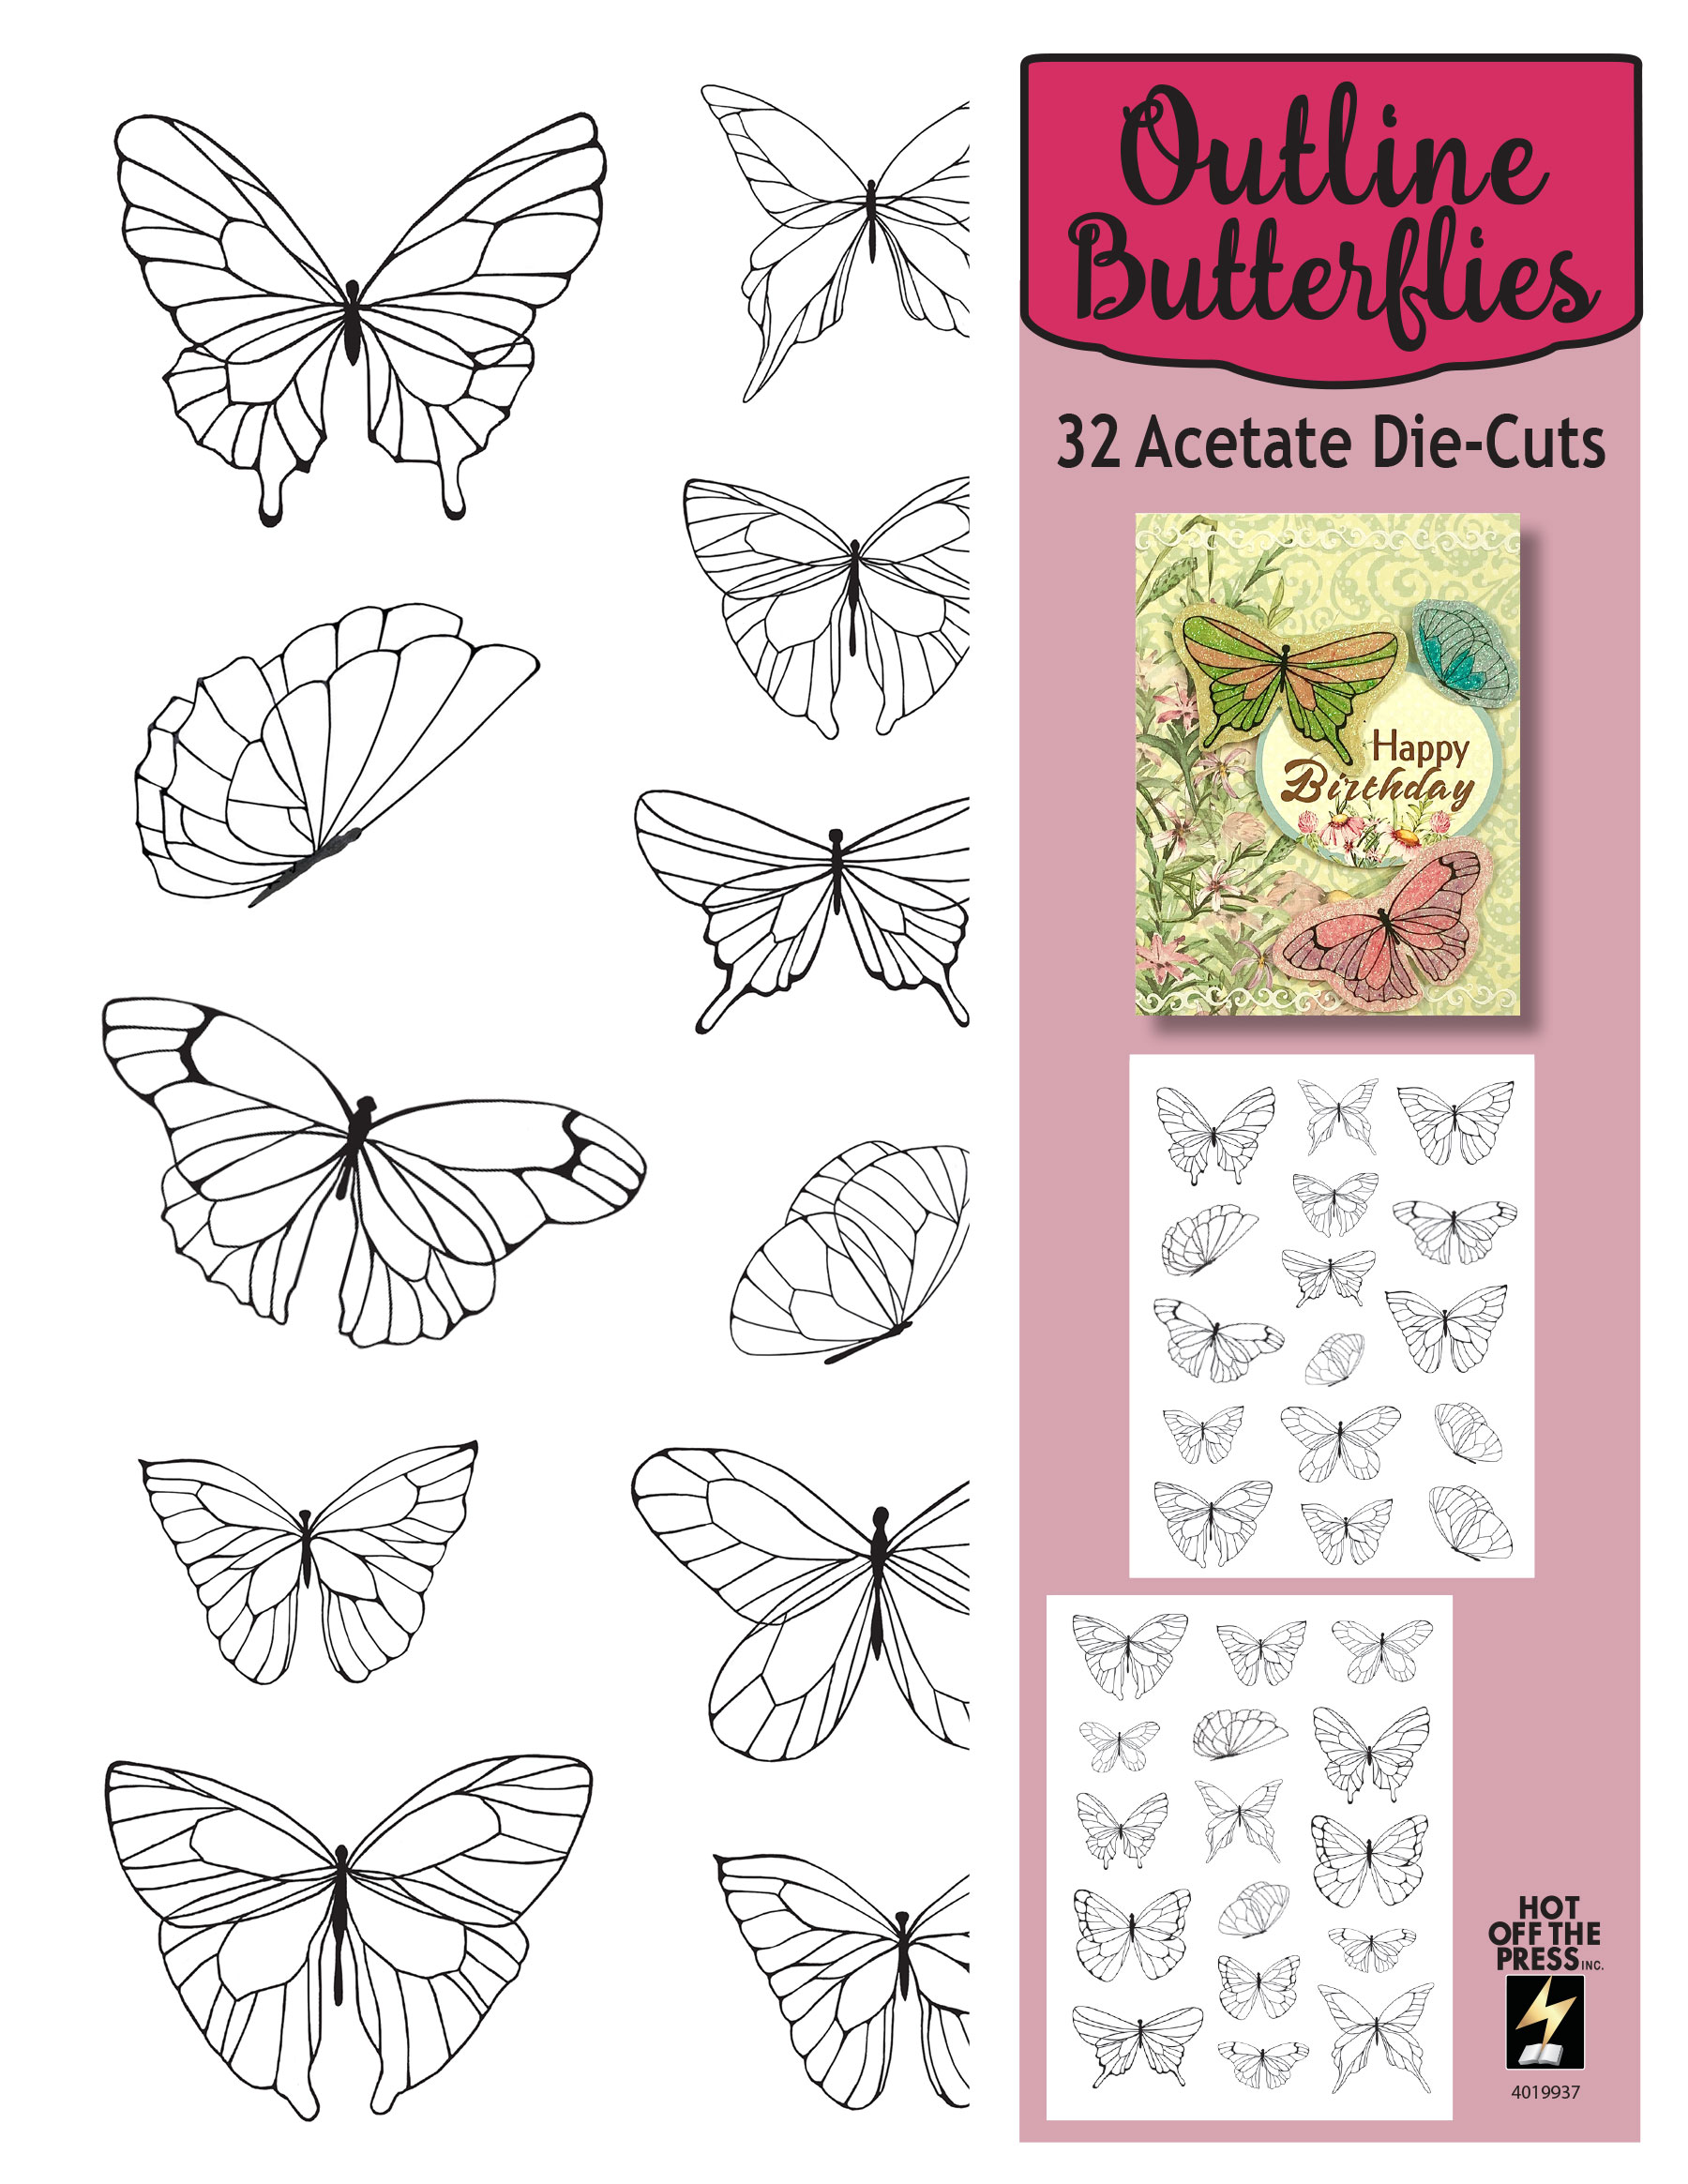 Outline Butterflies Die-Cut Acetate, 32 pieces